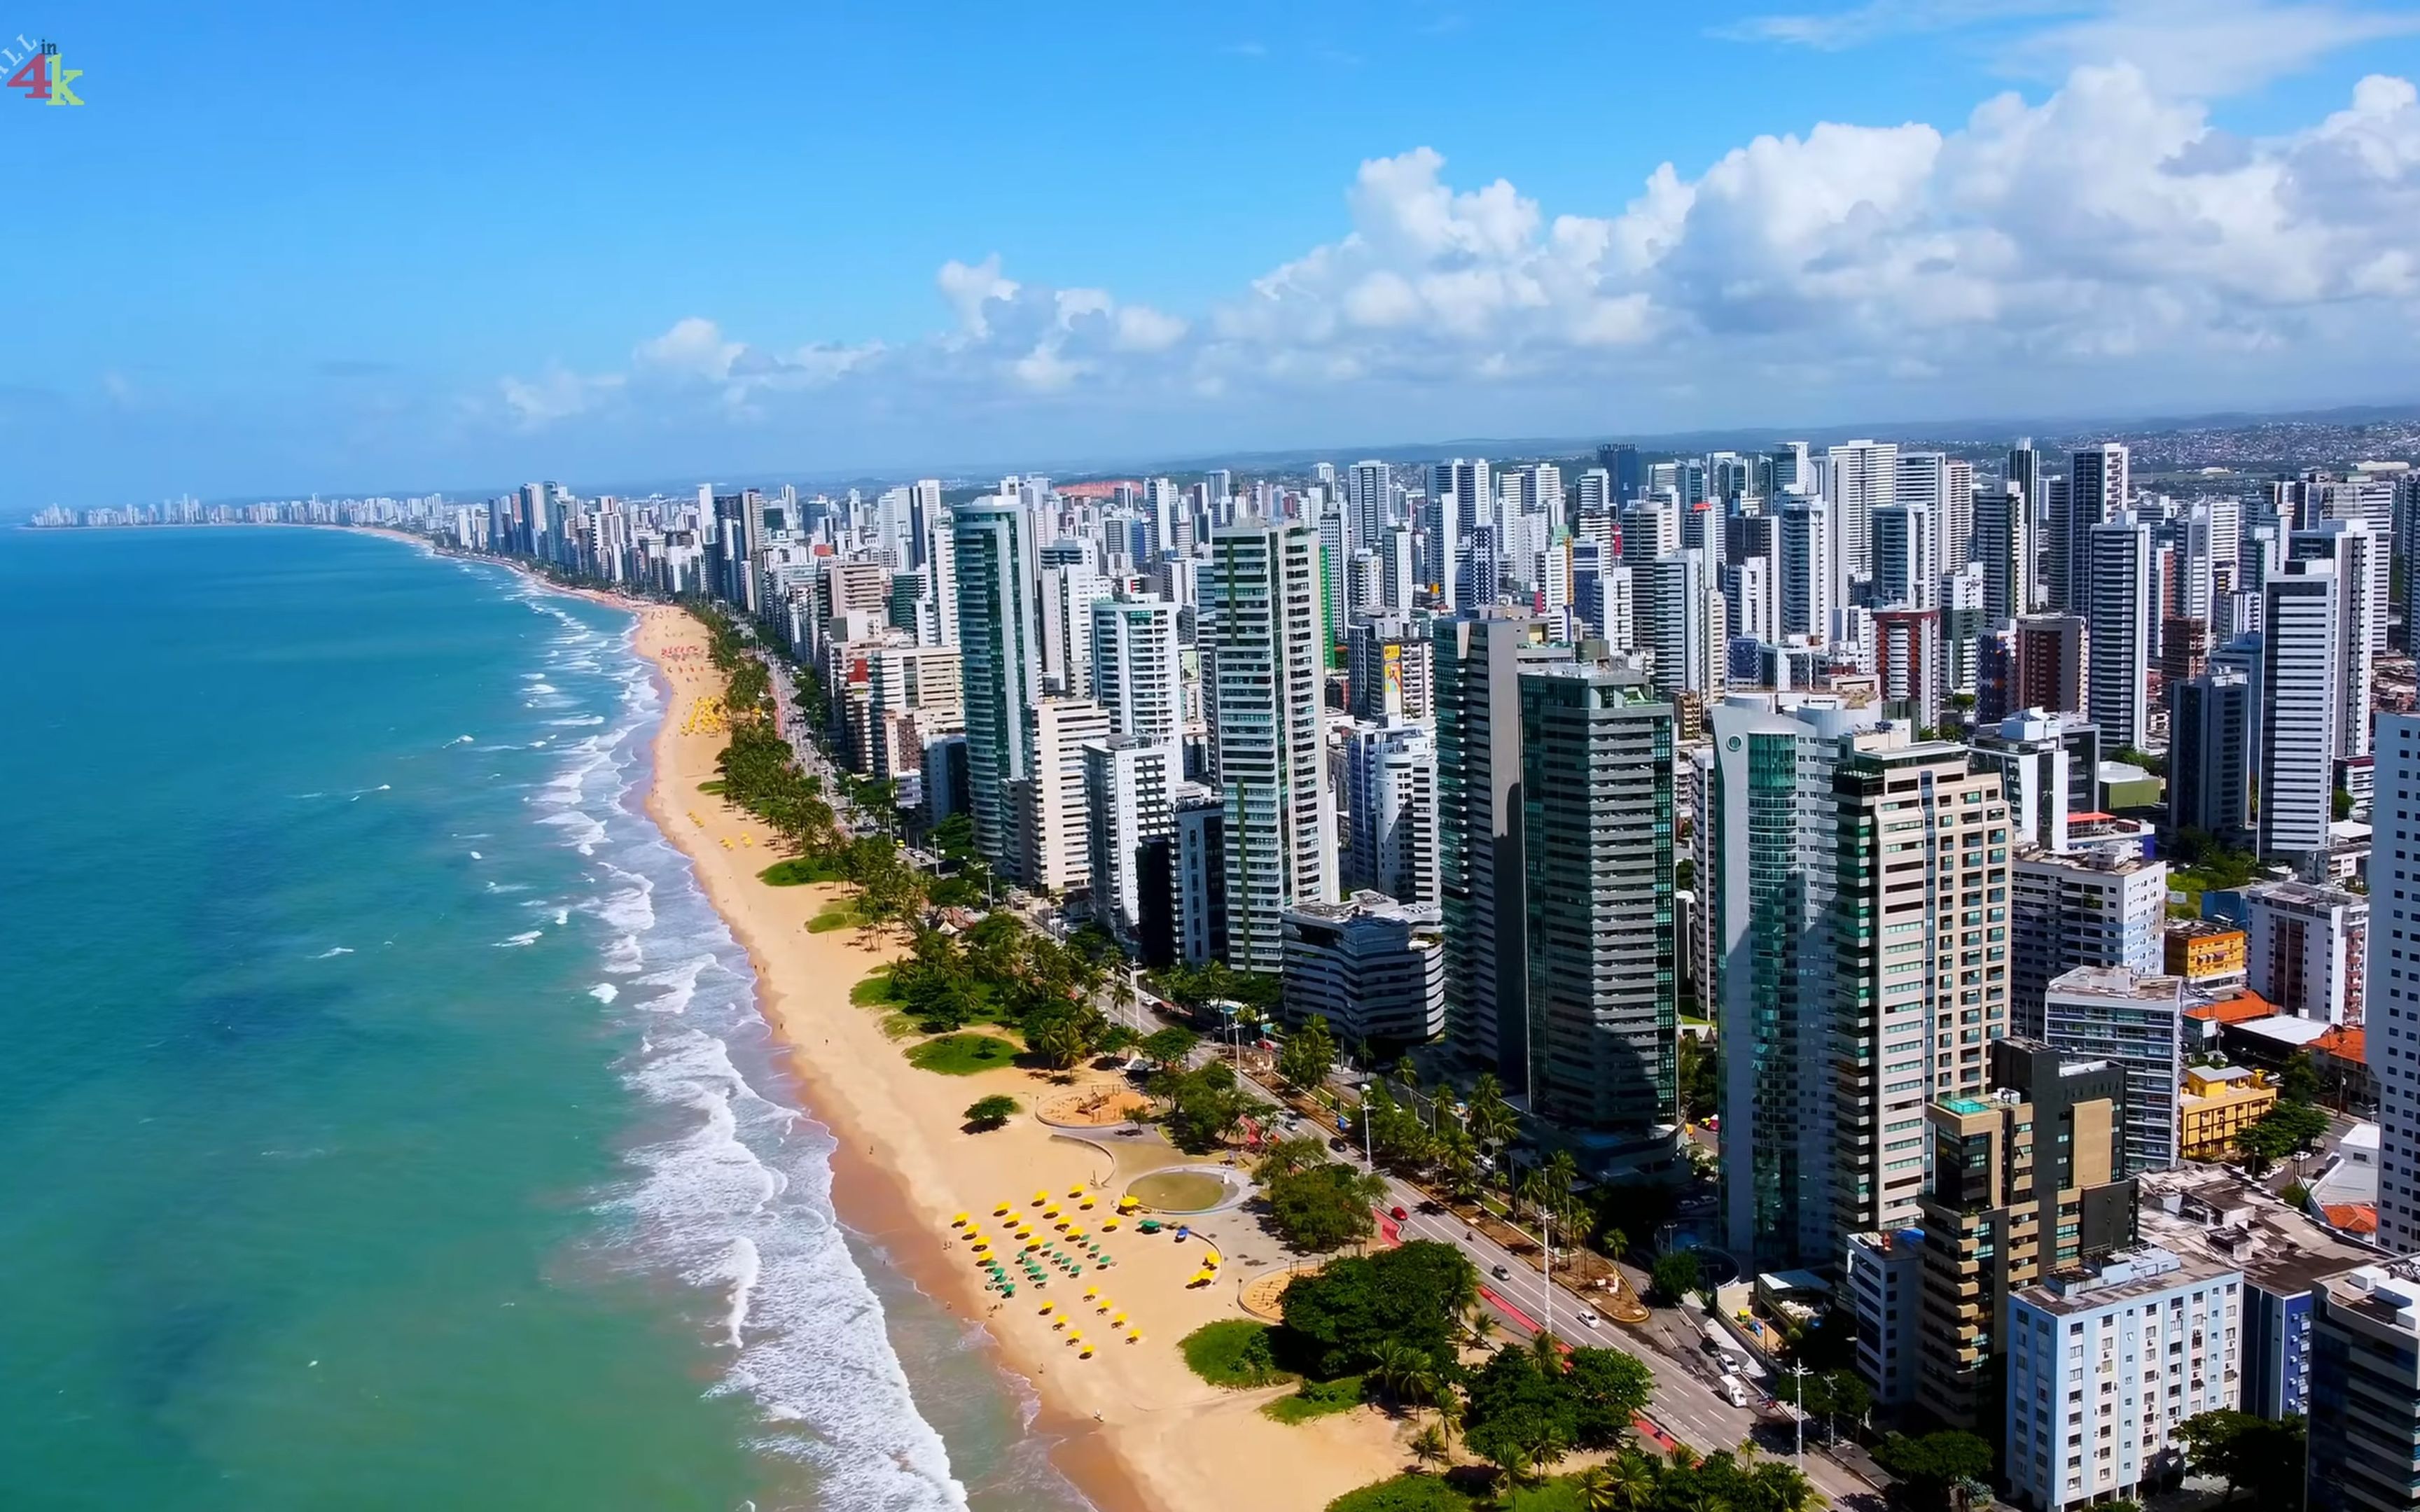 4k超高清巴西巴西第五大城市大西洋沿岸的累西腓4k无人机画面2022731